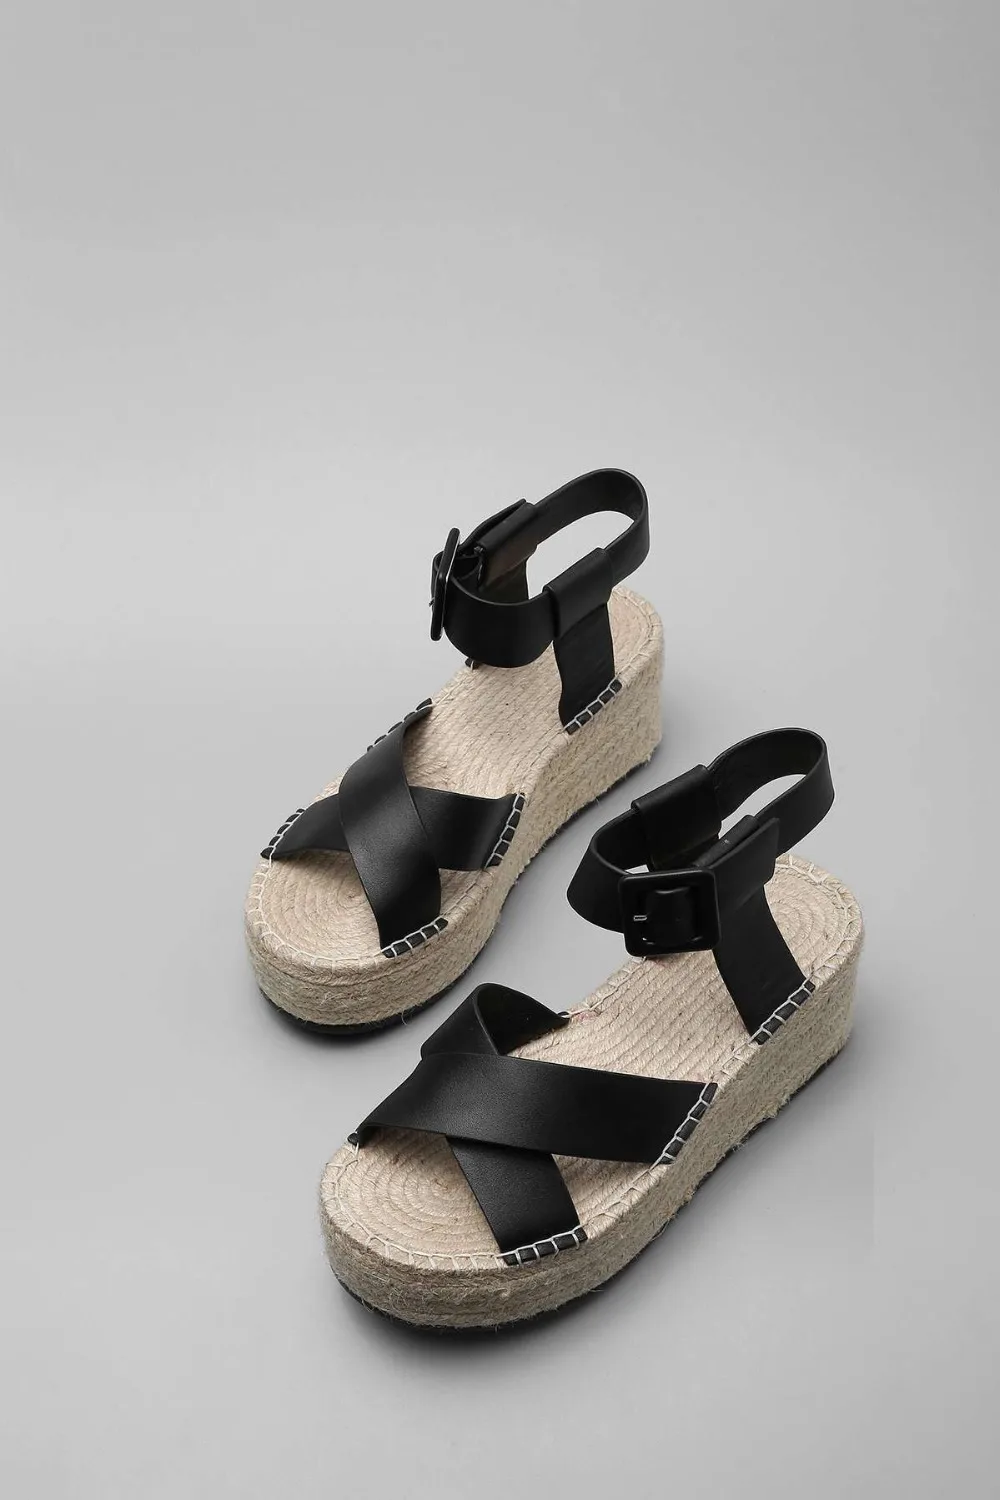 Krazing pot/женские туфли из натуральной кожи с открытым носком на соломенной подошве; Туфли на танкетке на высоком каблуке в европейском стиле; однотонные роскошные сандалии в консервативном стиле; L69